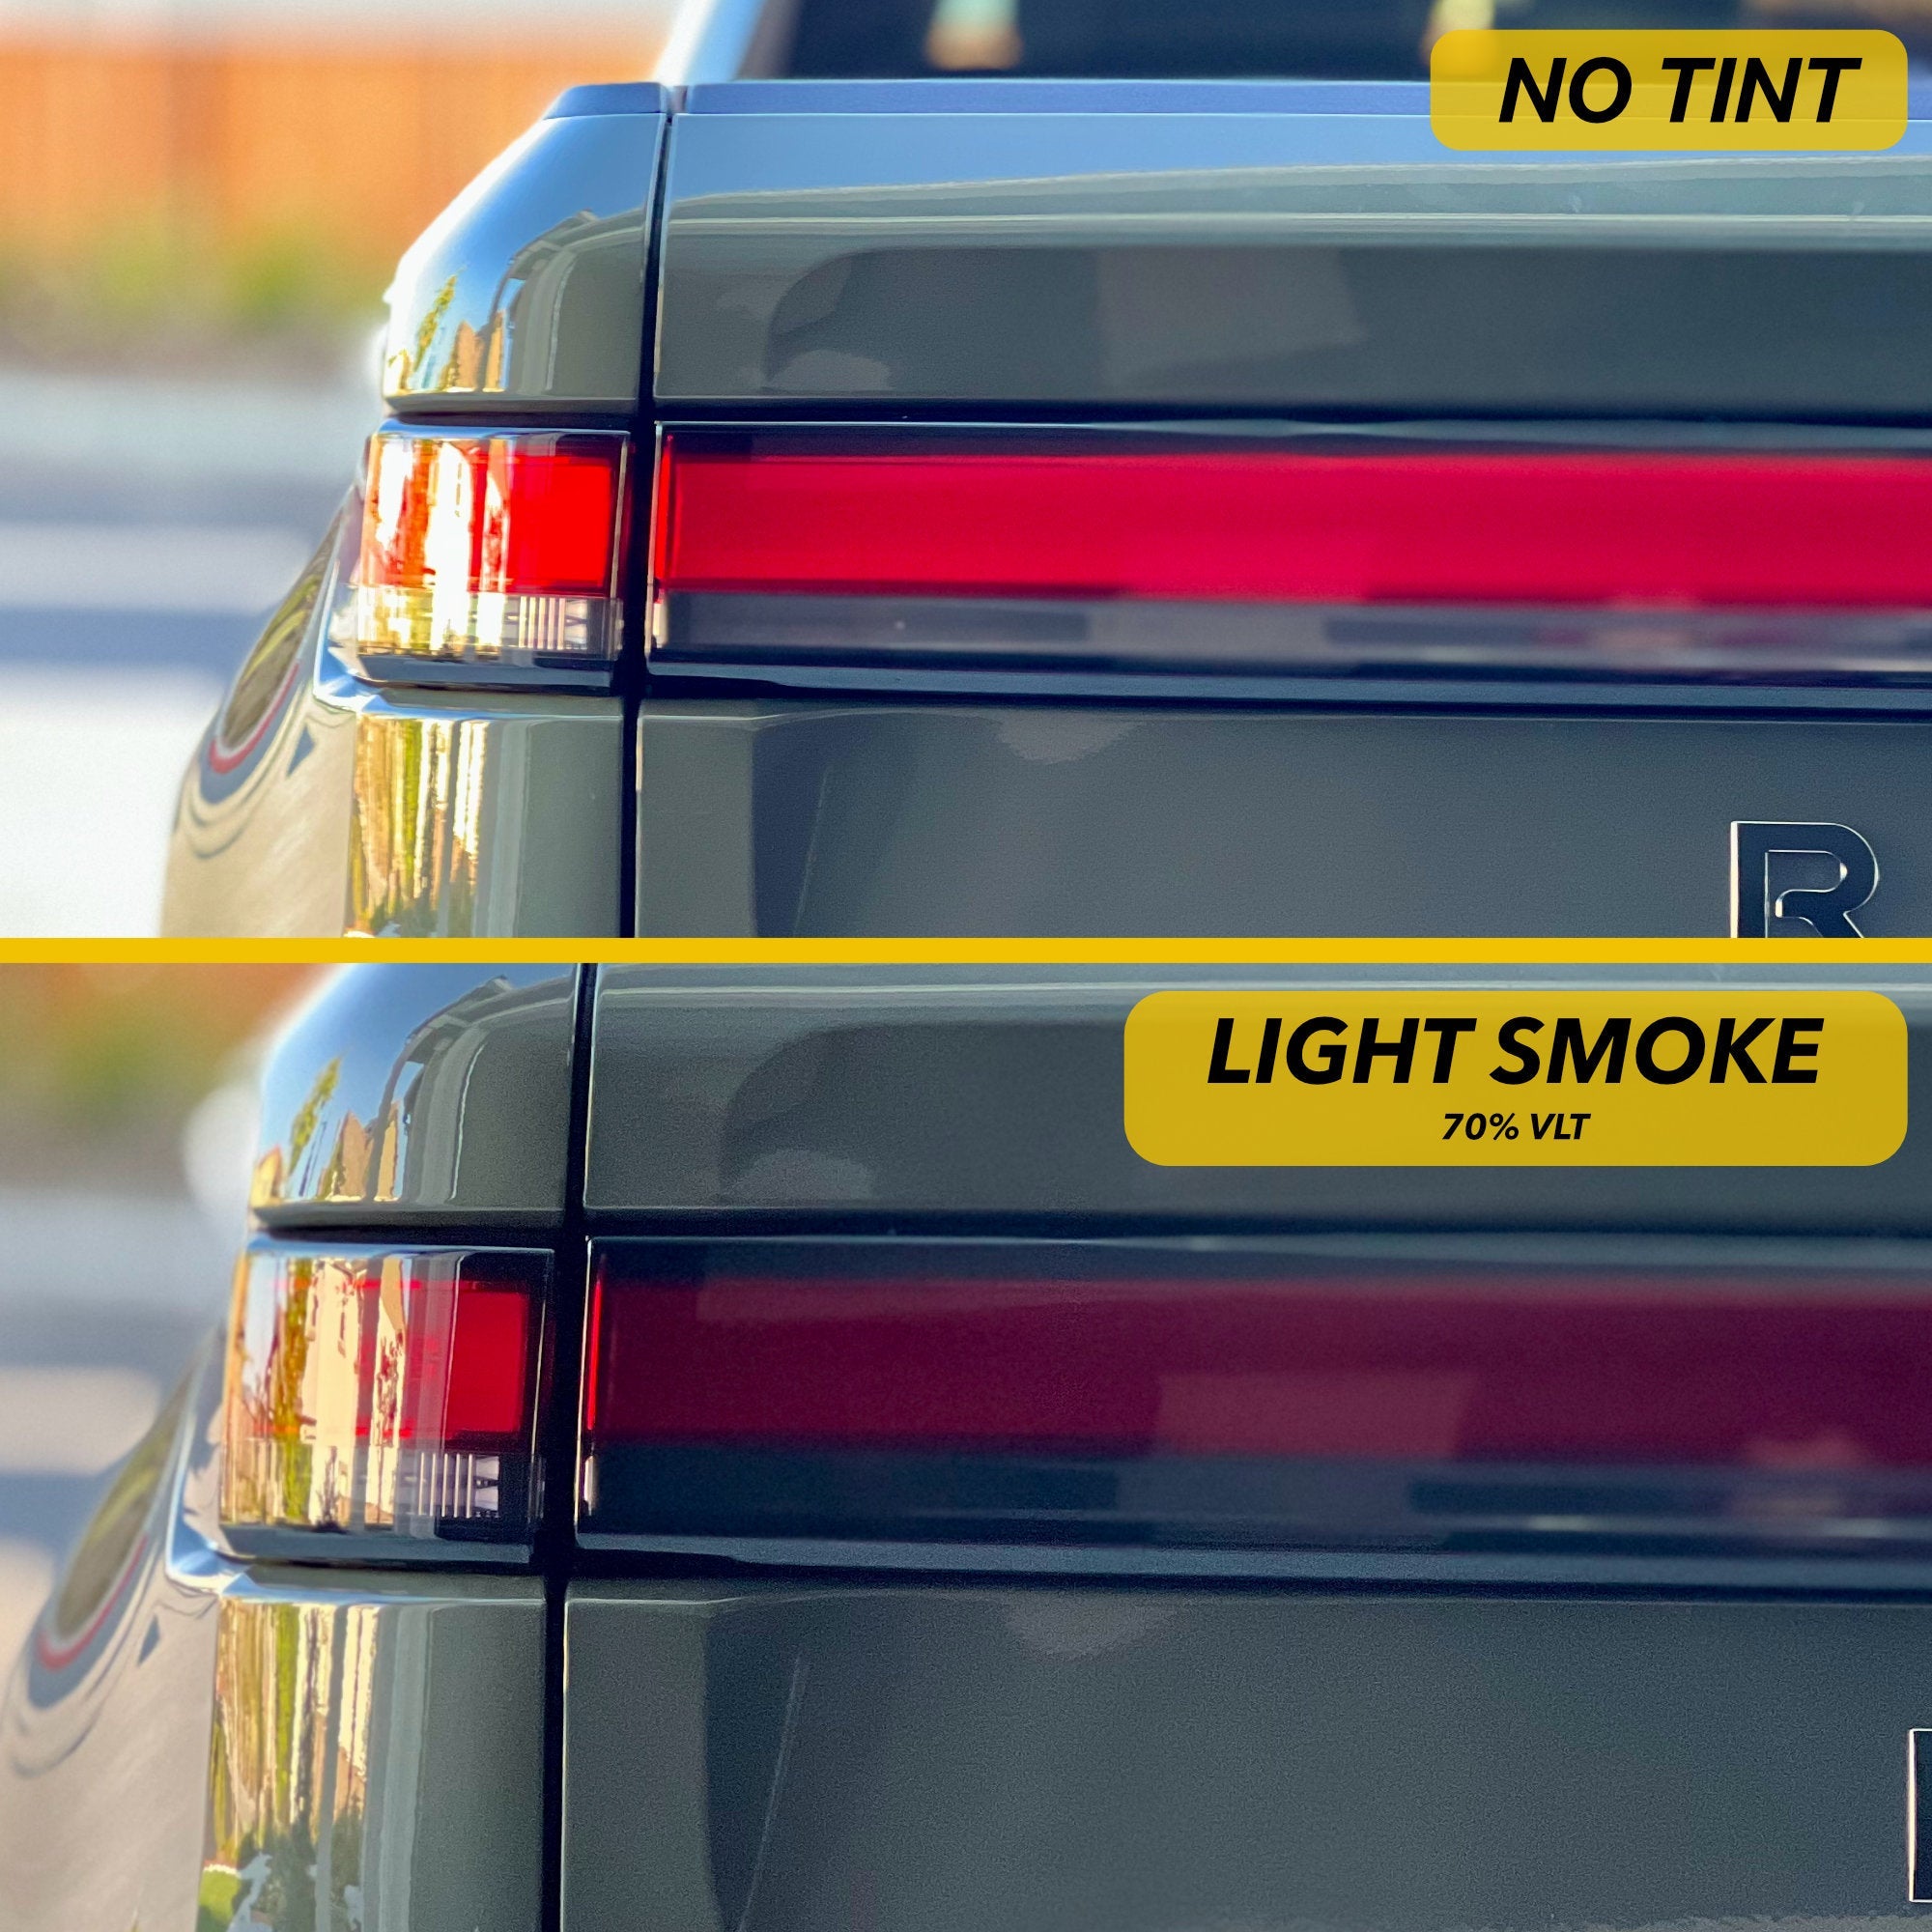 Light Smoke vs. No Tint